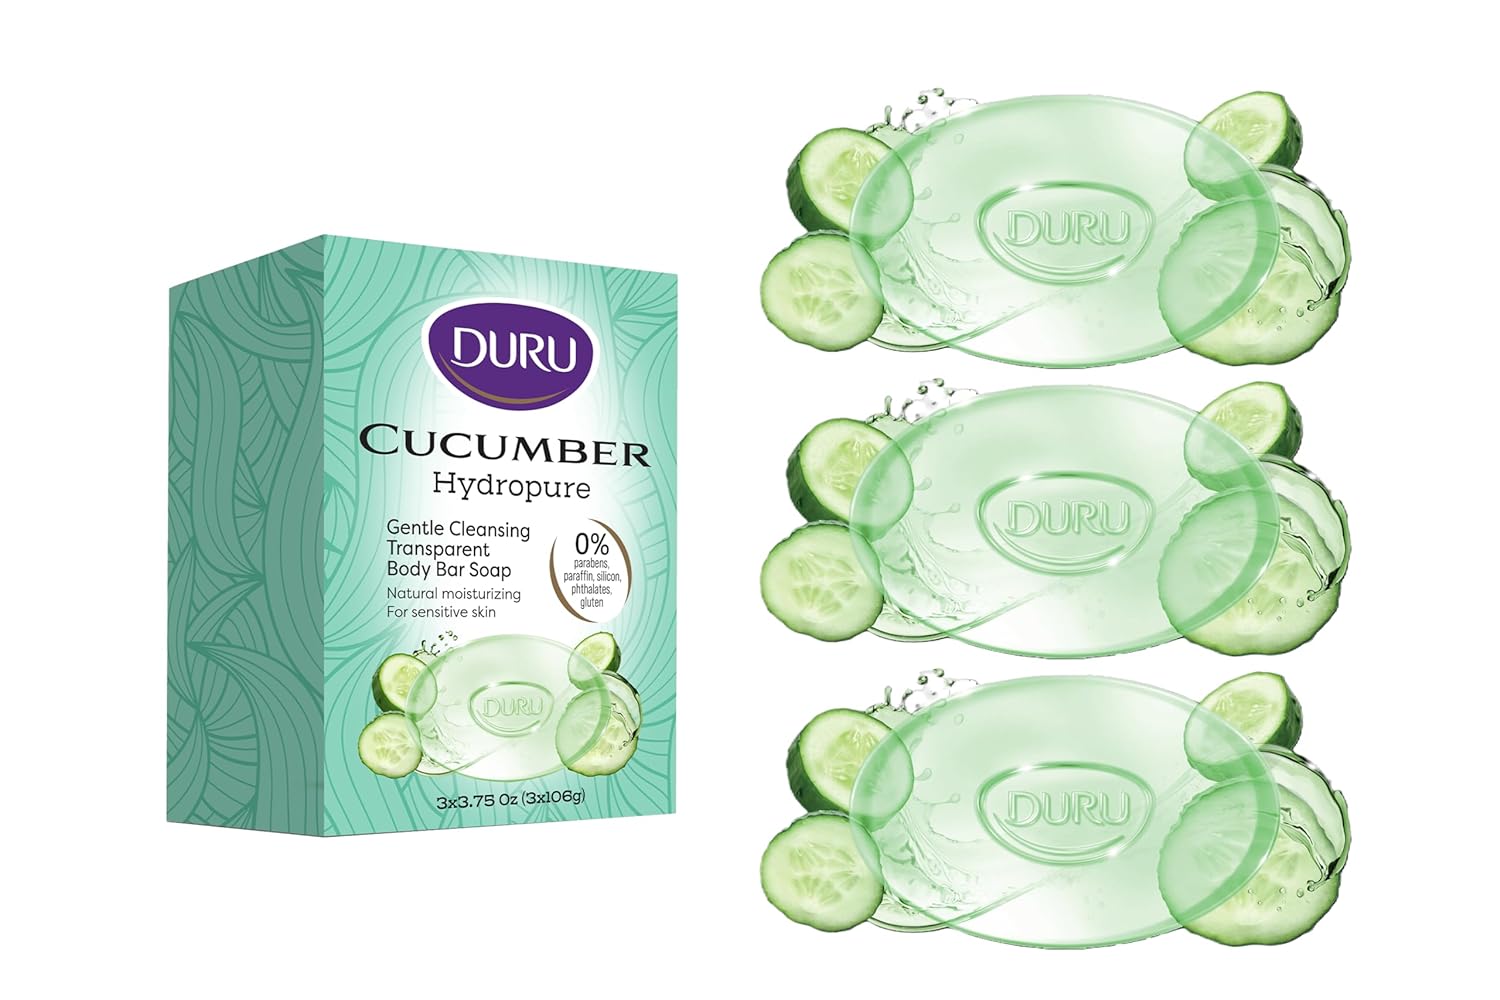 Duru Cucumber Glycerin Bar Soap Cleansing Bar Moisturizing Sensitive Skin - Vegan Transparent Paraben Free Alcohol Free Silicone Free Phthalete Free Gluten Free Body Wash - 3 Pack